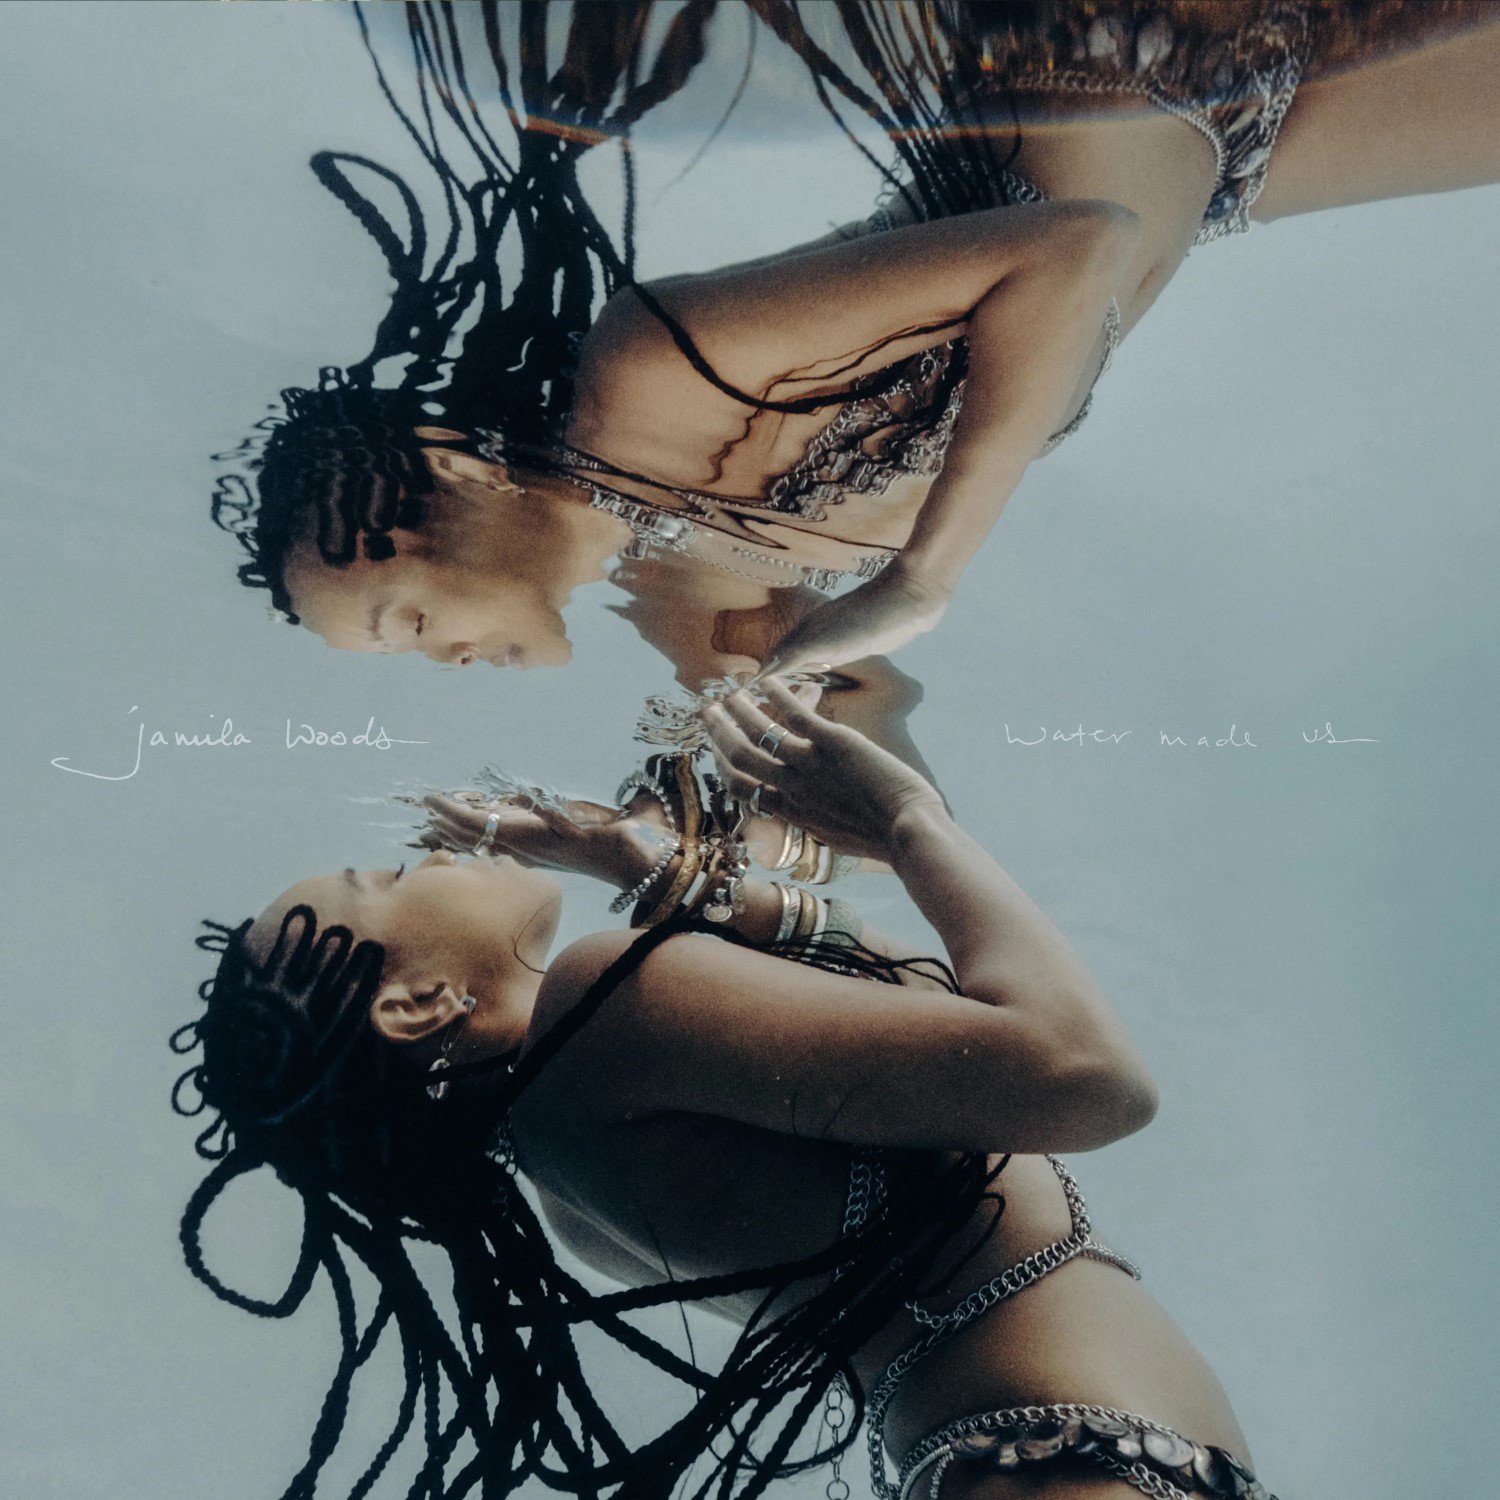 Jamila Woods – "Water Made Us", fot. Jagjaguwar